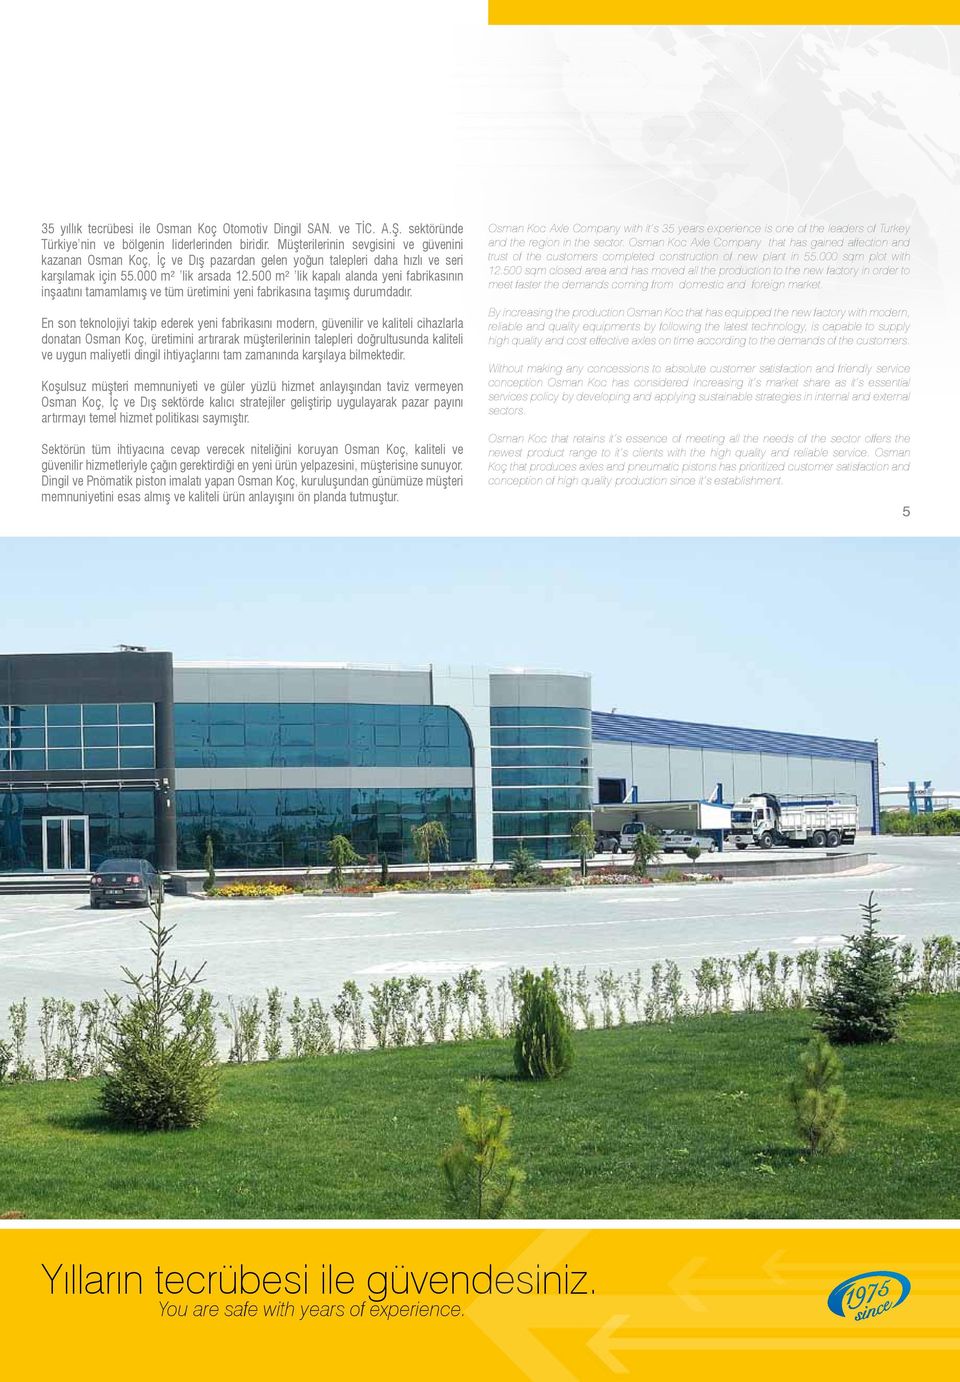 500 m² lik kapalı alanda yeni fabrikasının inşaatını tamamlamış ve tüm üretimini yeni fabrikasına taşımış durumdadır.